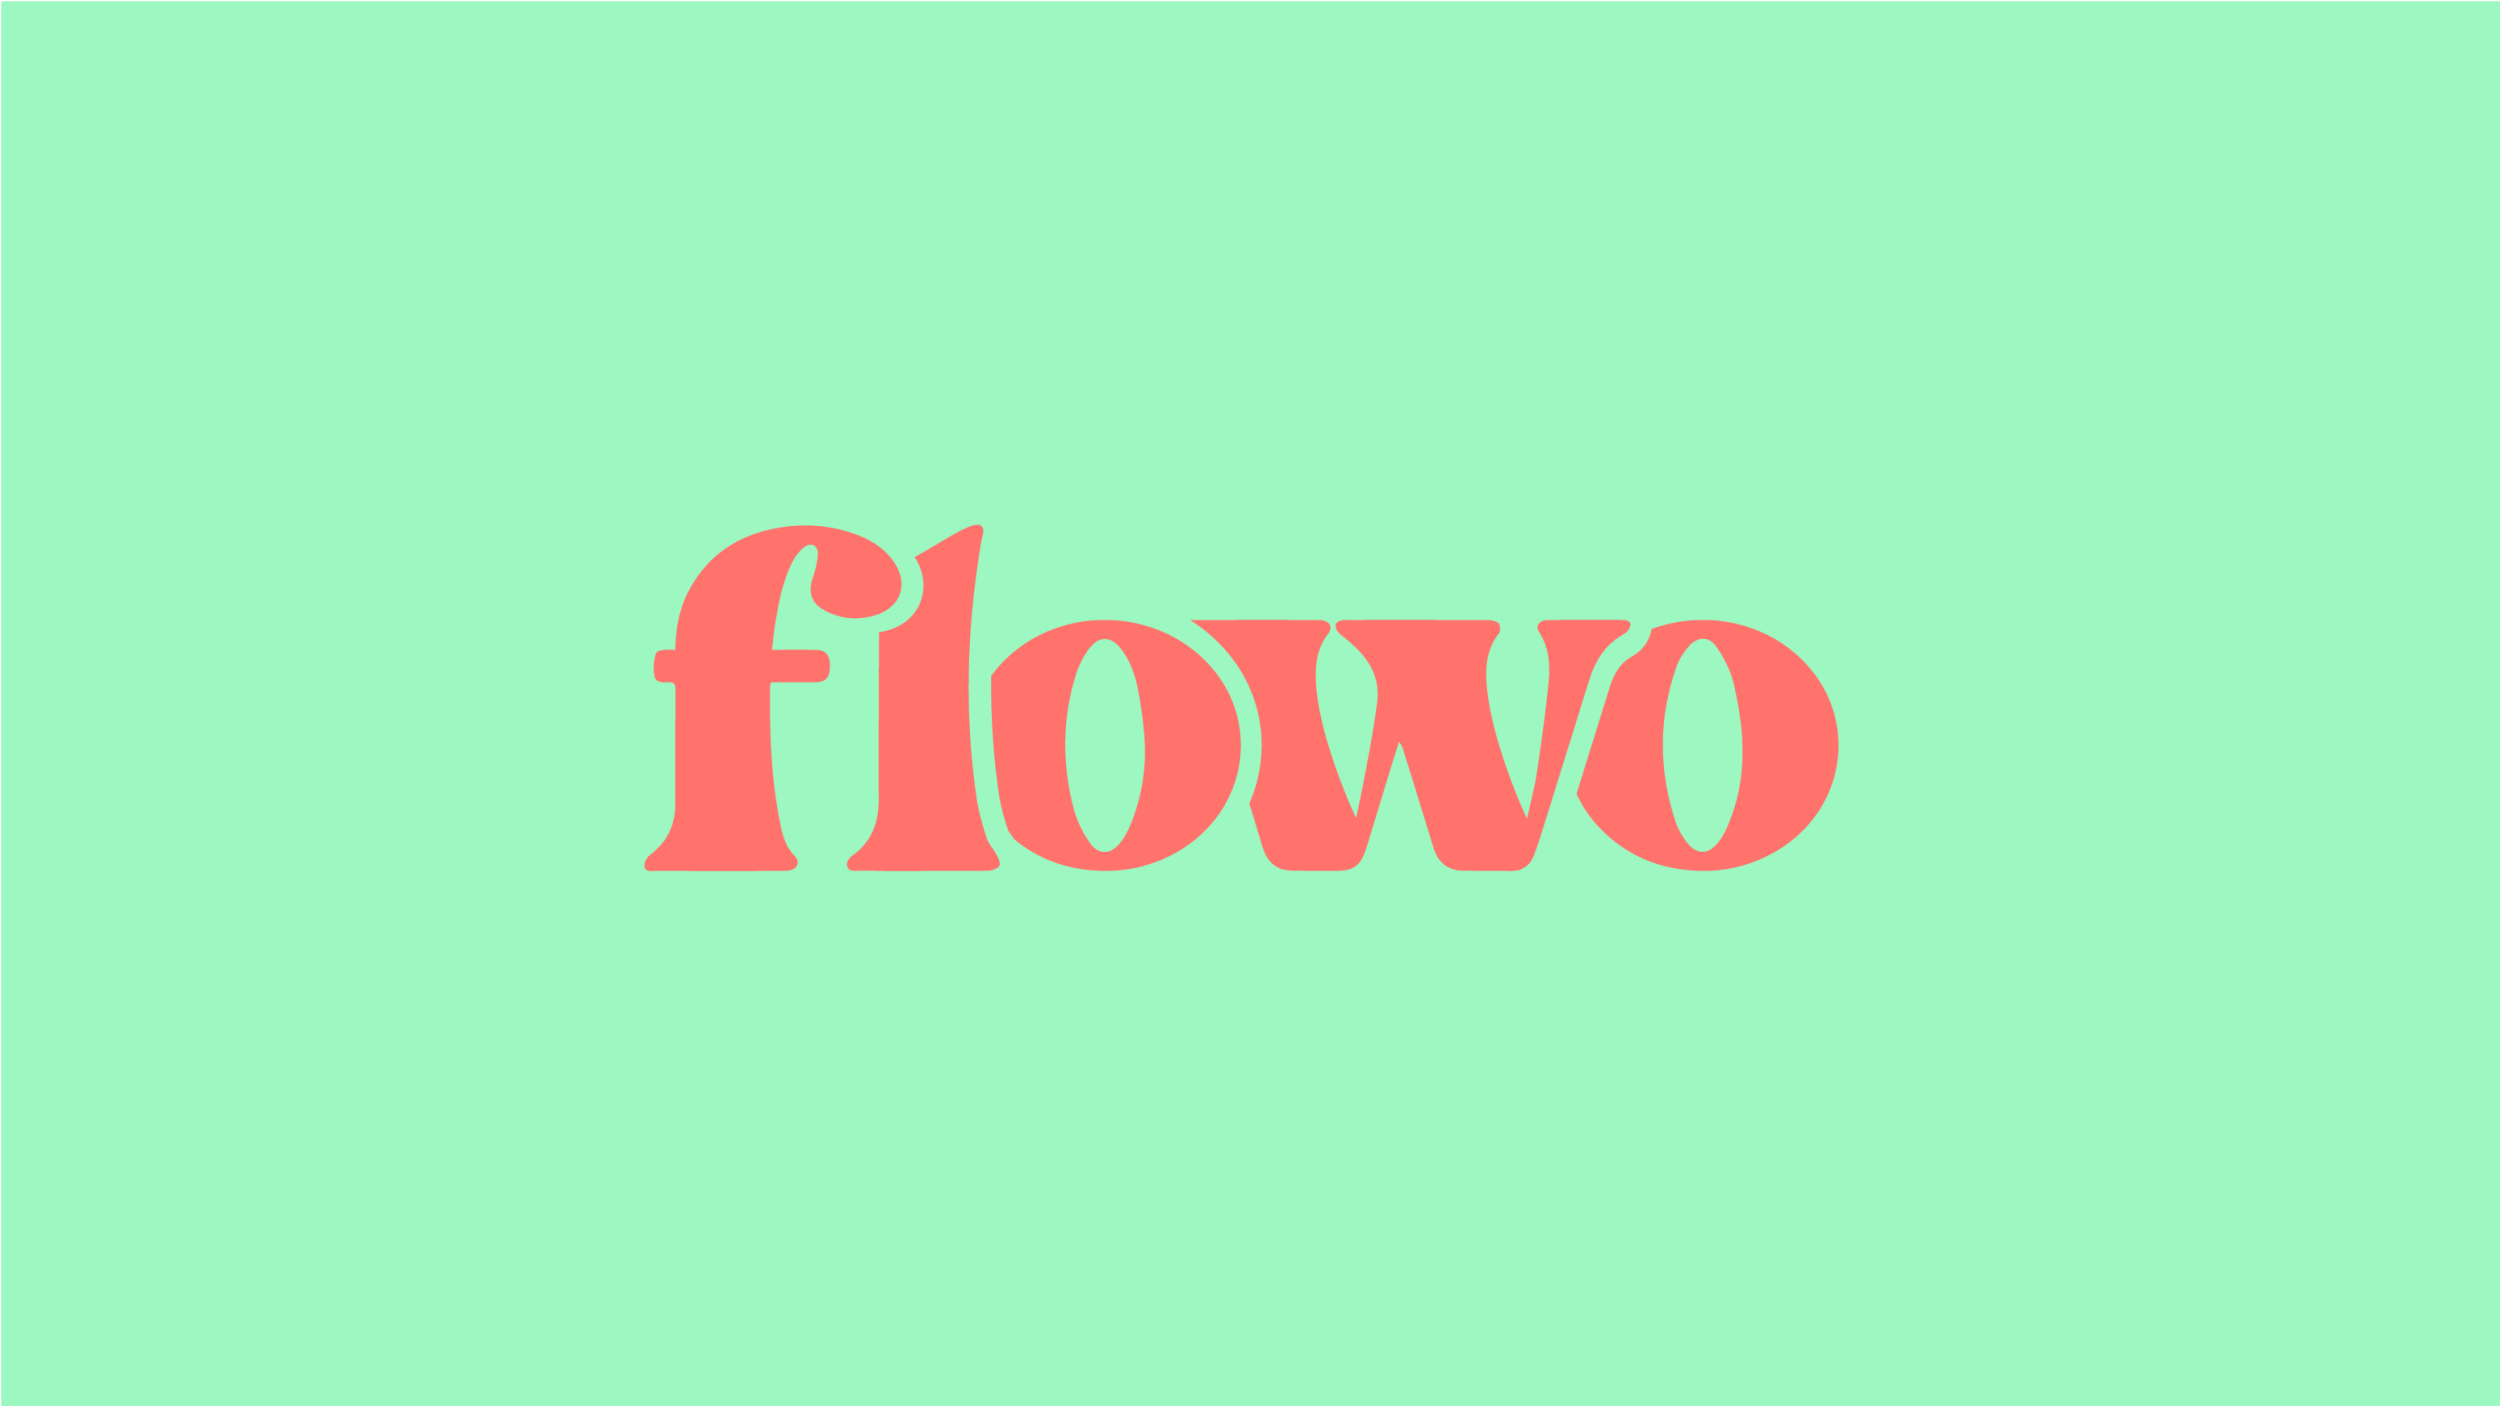 FLOWO-01.gif